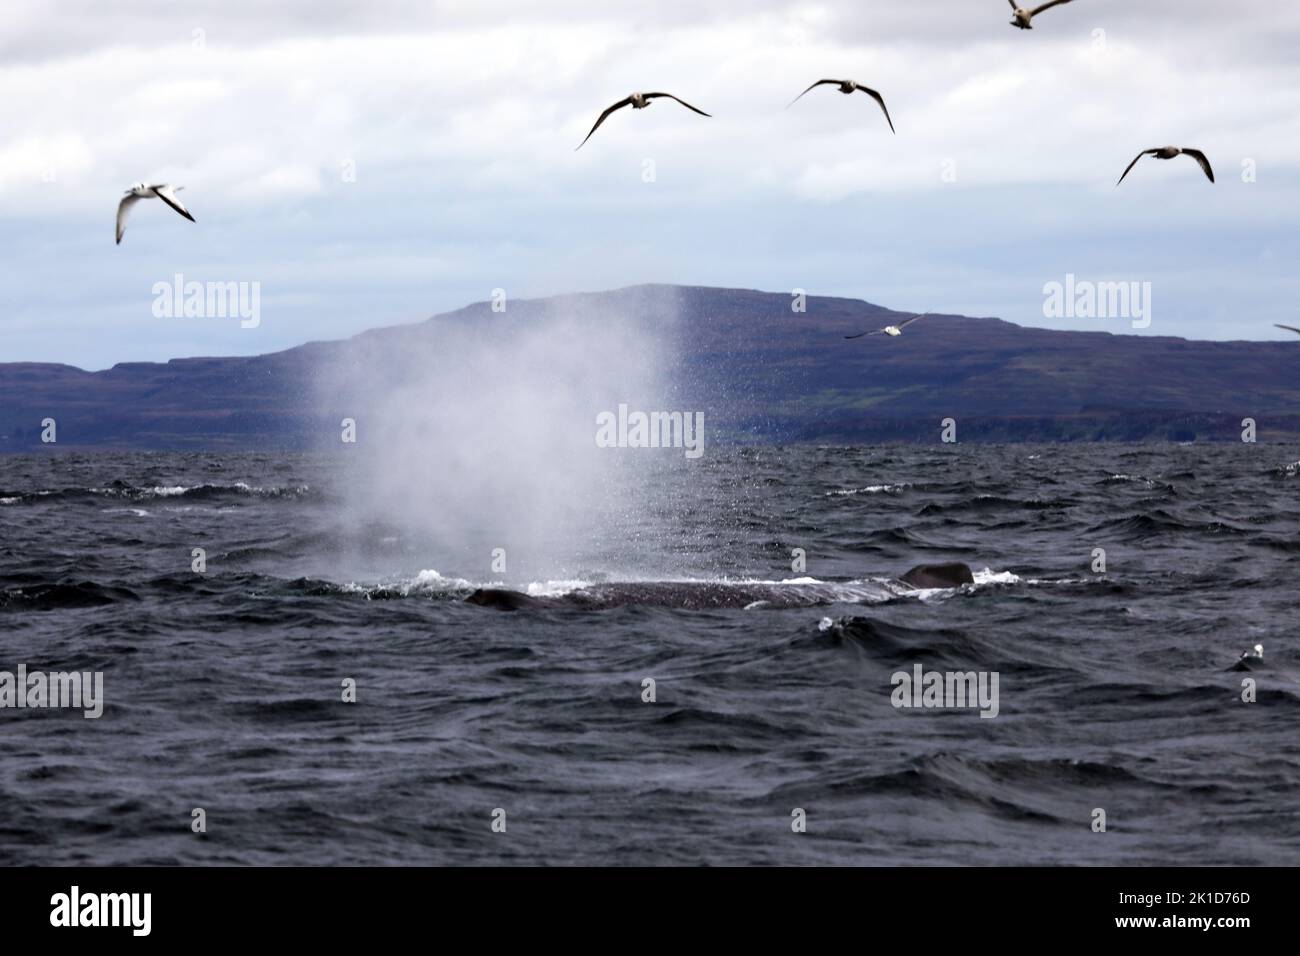 Becco di balena, al largo della costa delle isole di Mull e Iona nelle Ebridi interne della Scozia Foto Stock